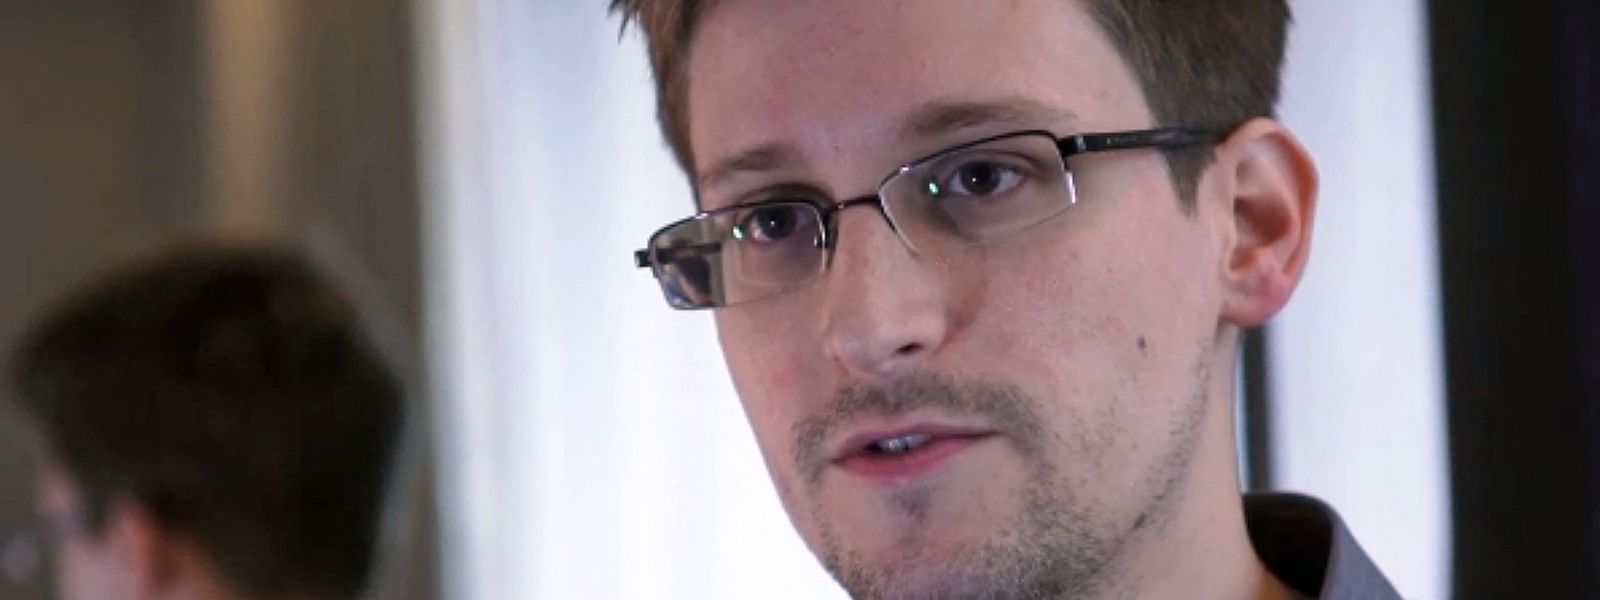 Kremlchef Wladimir Putin hat dem US-Whistleblower Edward Snowden die russische Staatsbürgerschaft zuerkannt. Der Name des 39-Jährigen findet sich auf einer vom Kreml veröffentlichten Liste mit neuen Staatsbürgern.